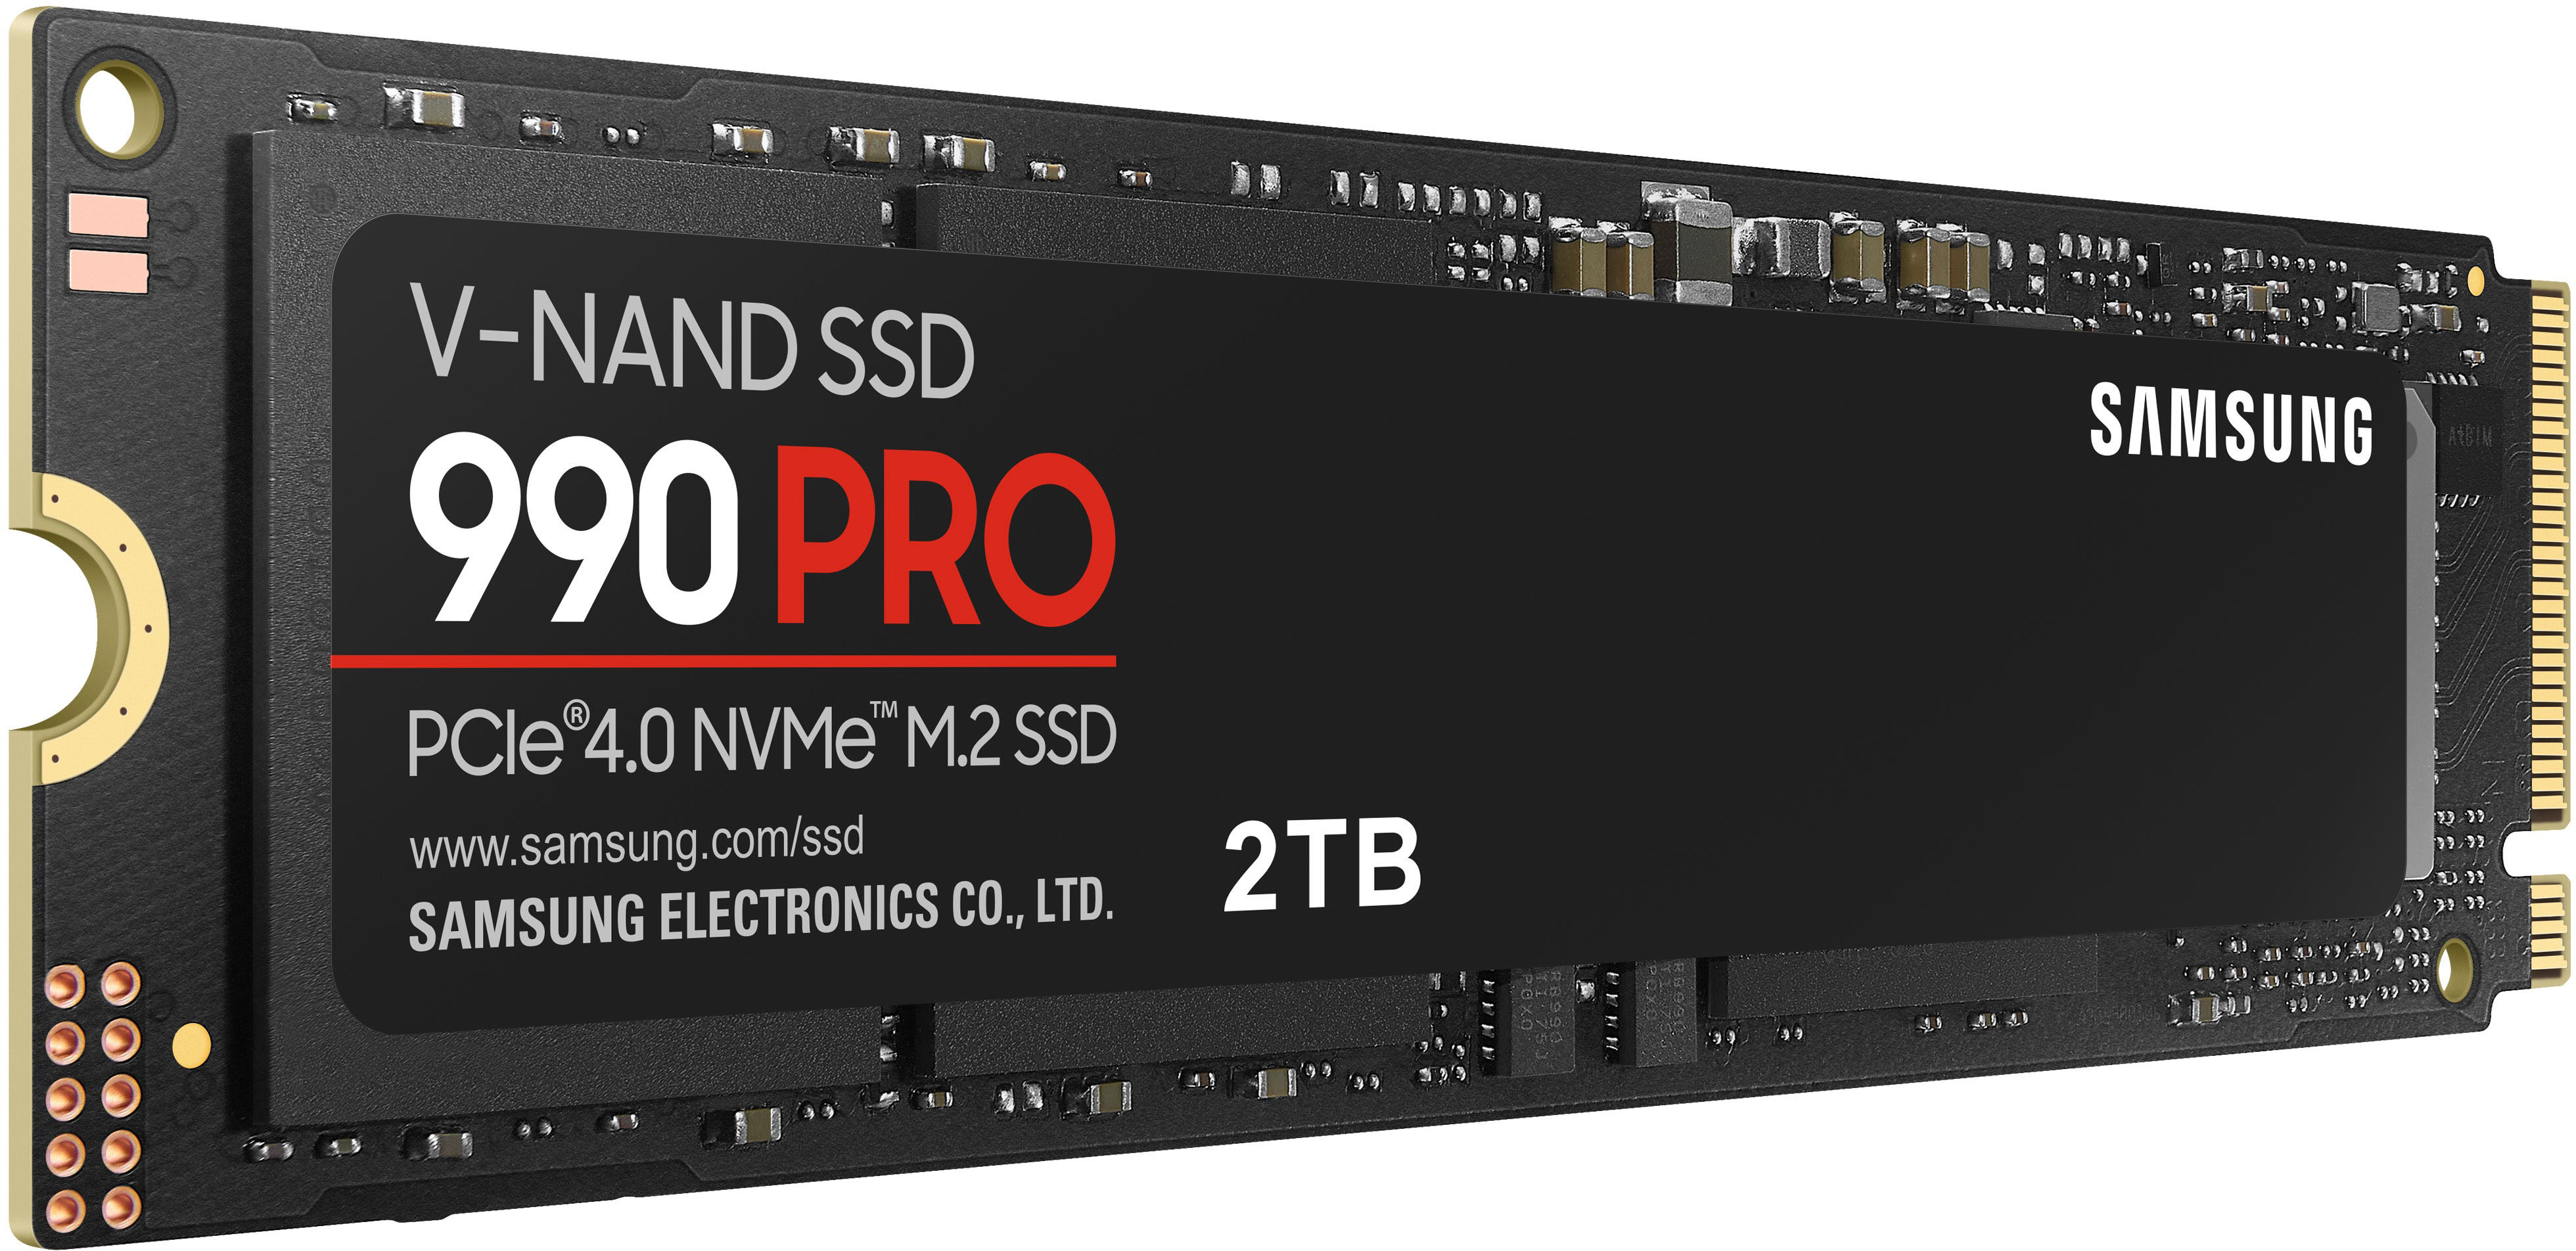 Samsung SSD 990 PRO M2 NVMe PCIe Gen 4 - CGIndo